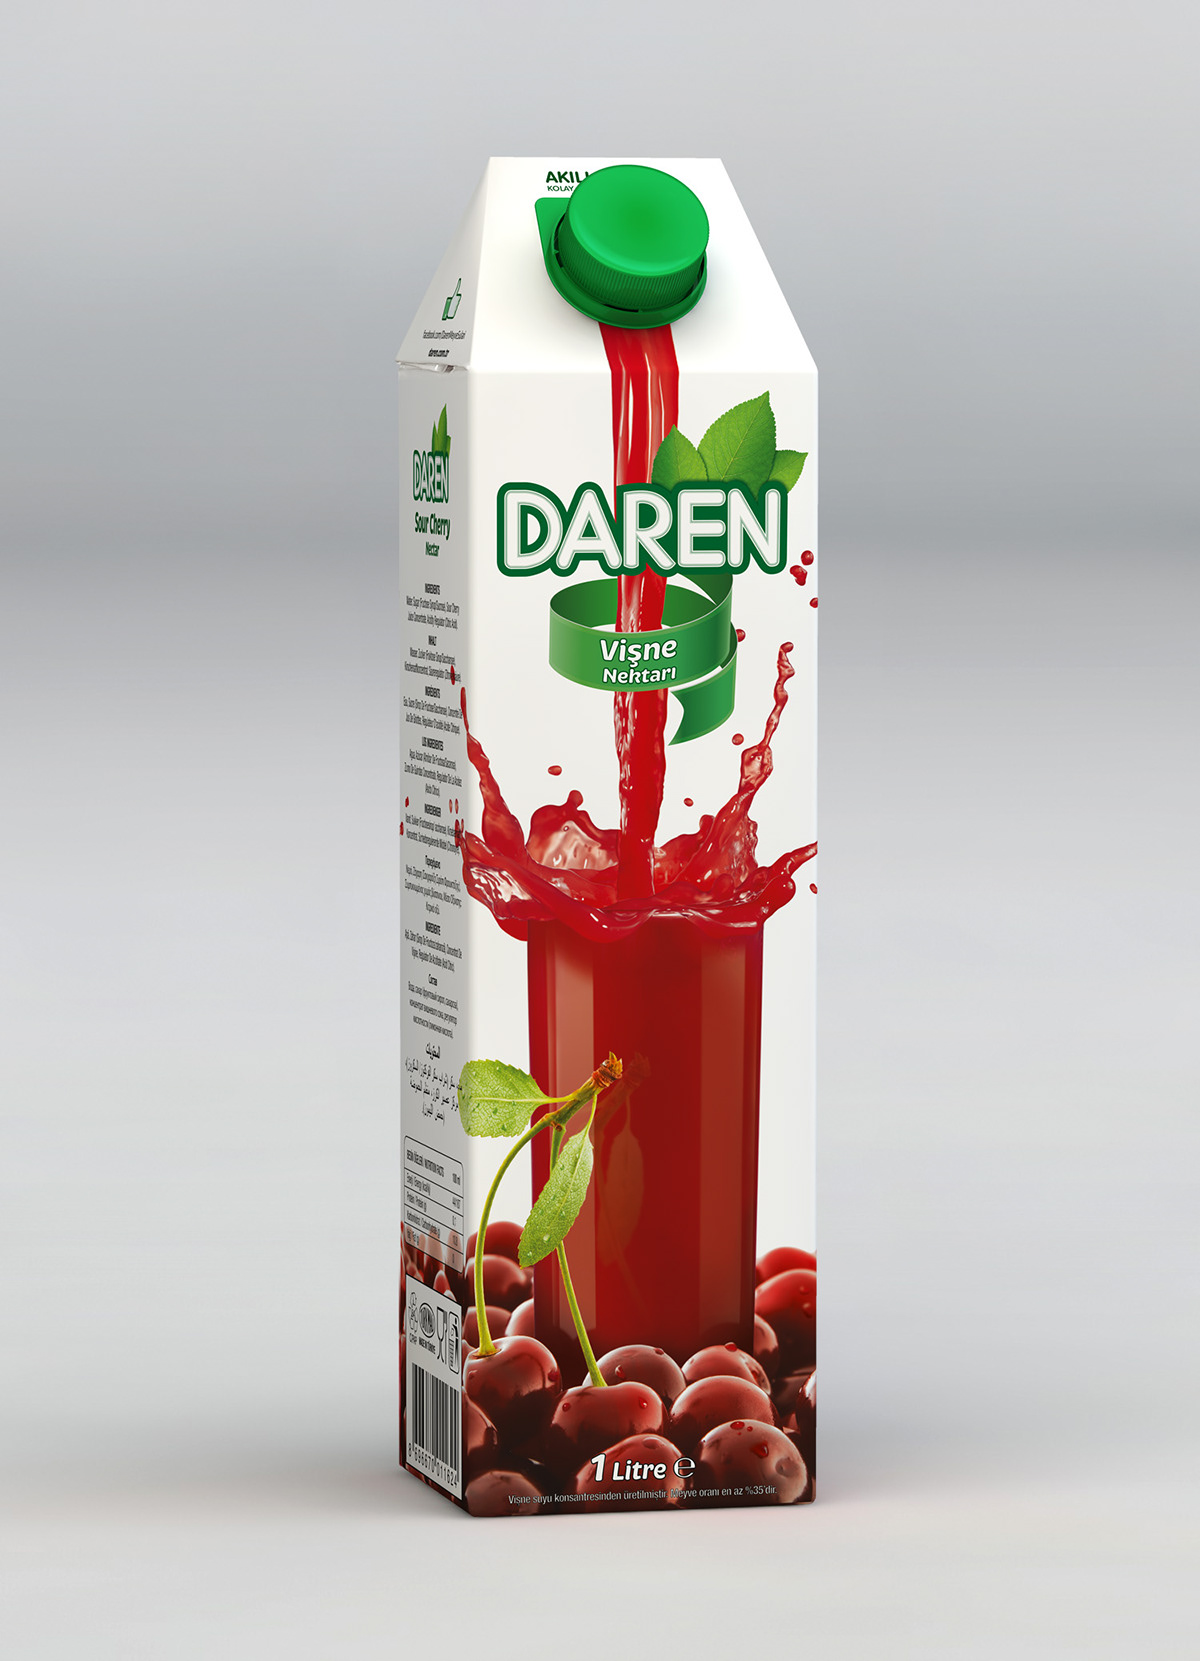 Daren fruit juice Meyve Suyu package design  Paket Tasarımı Gürkan Bayındır